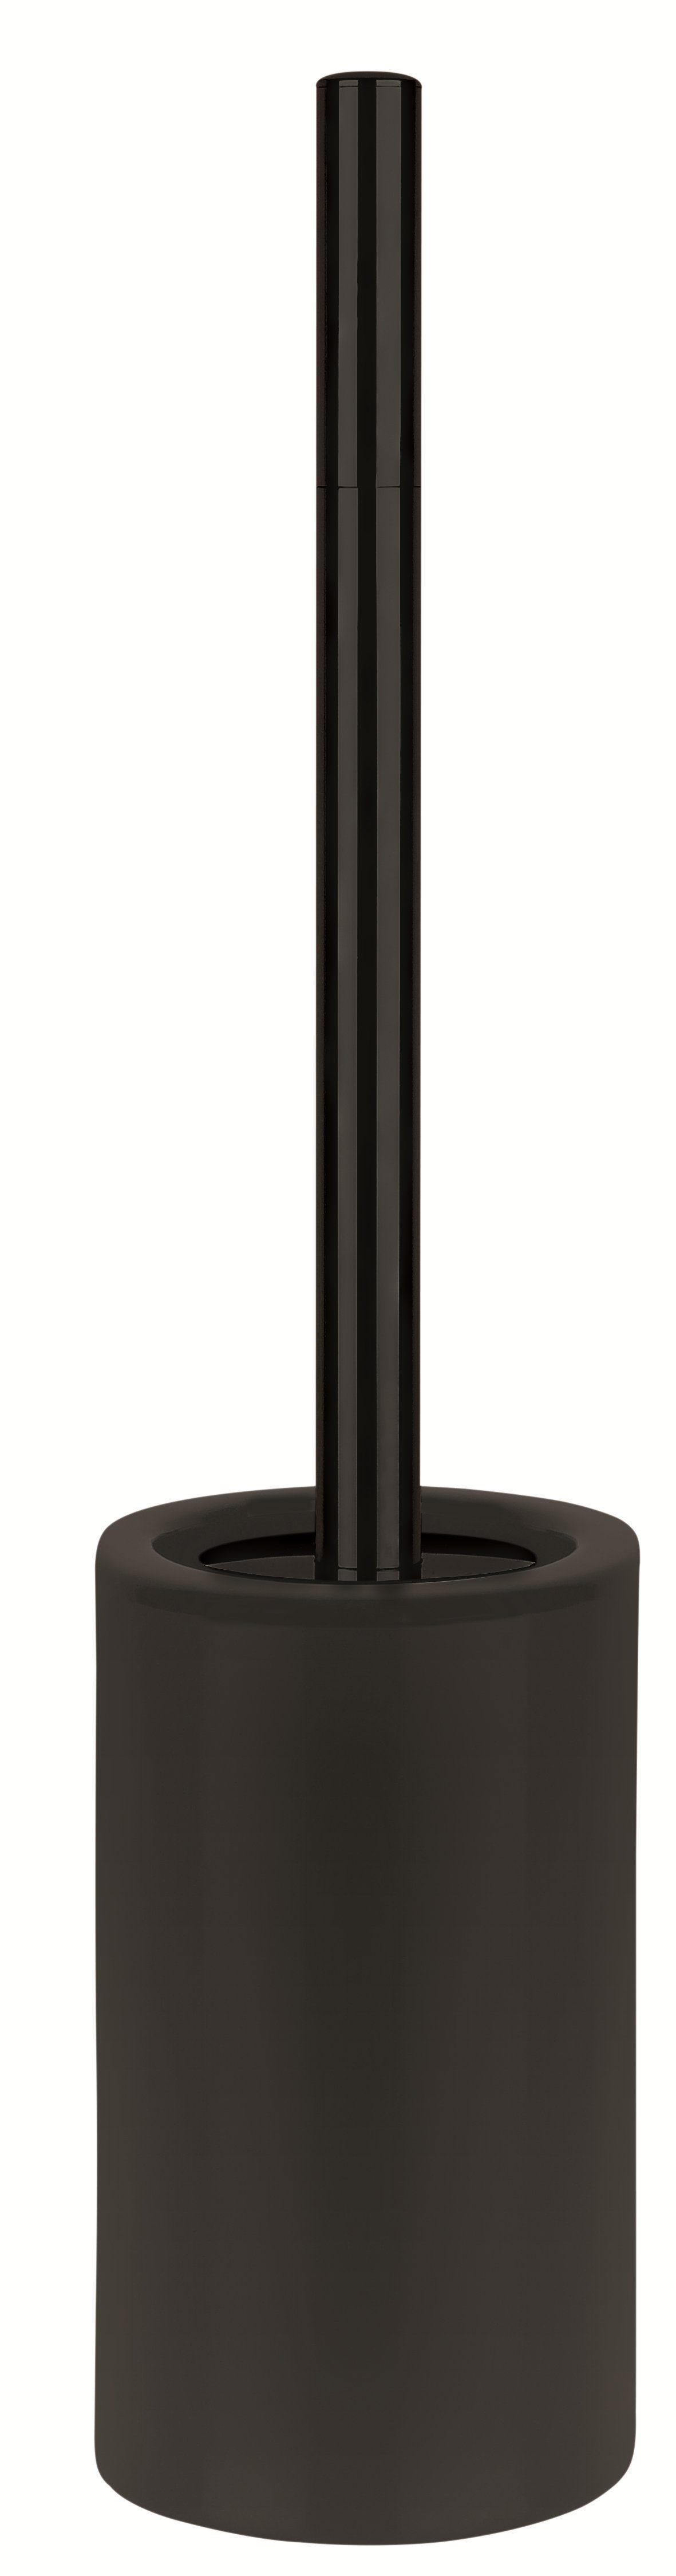 spirella TUBE-MATT, hochwertiger Matt-Optik elegante schwarz, Toilettenbürste WC-Bürste Toilettenpapierhalter aus Keramik,